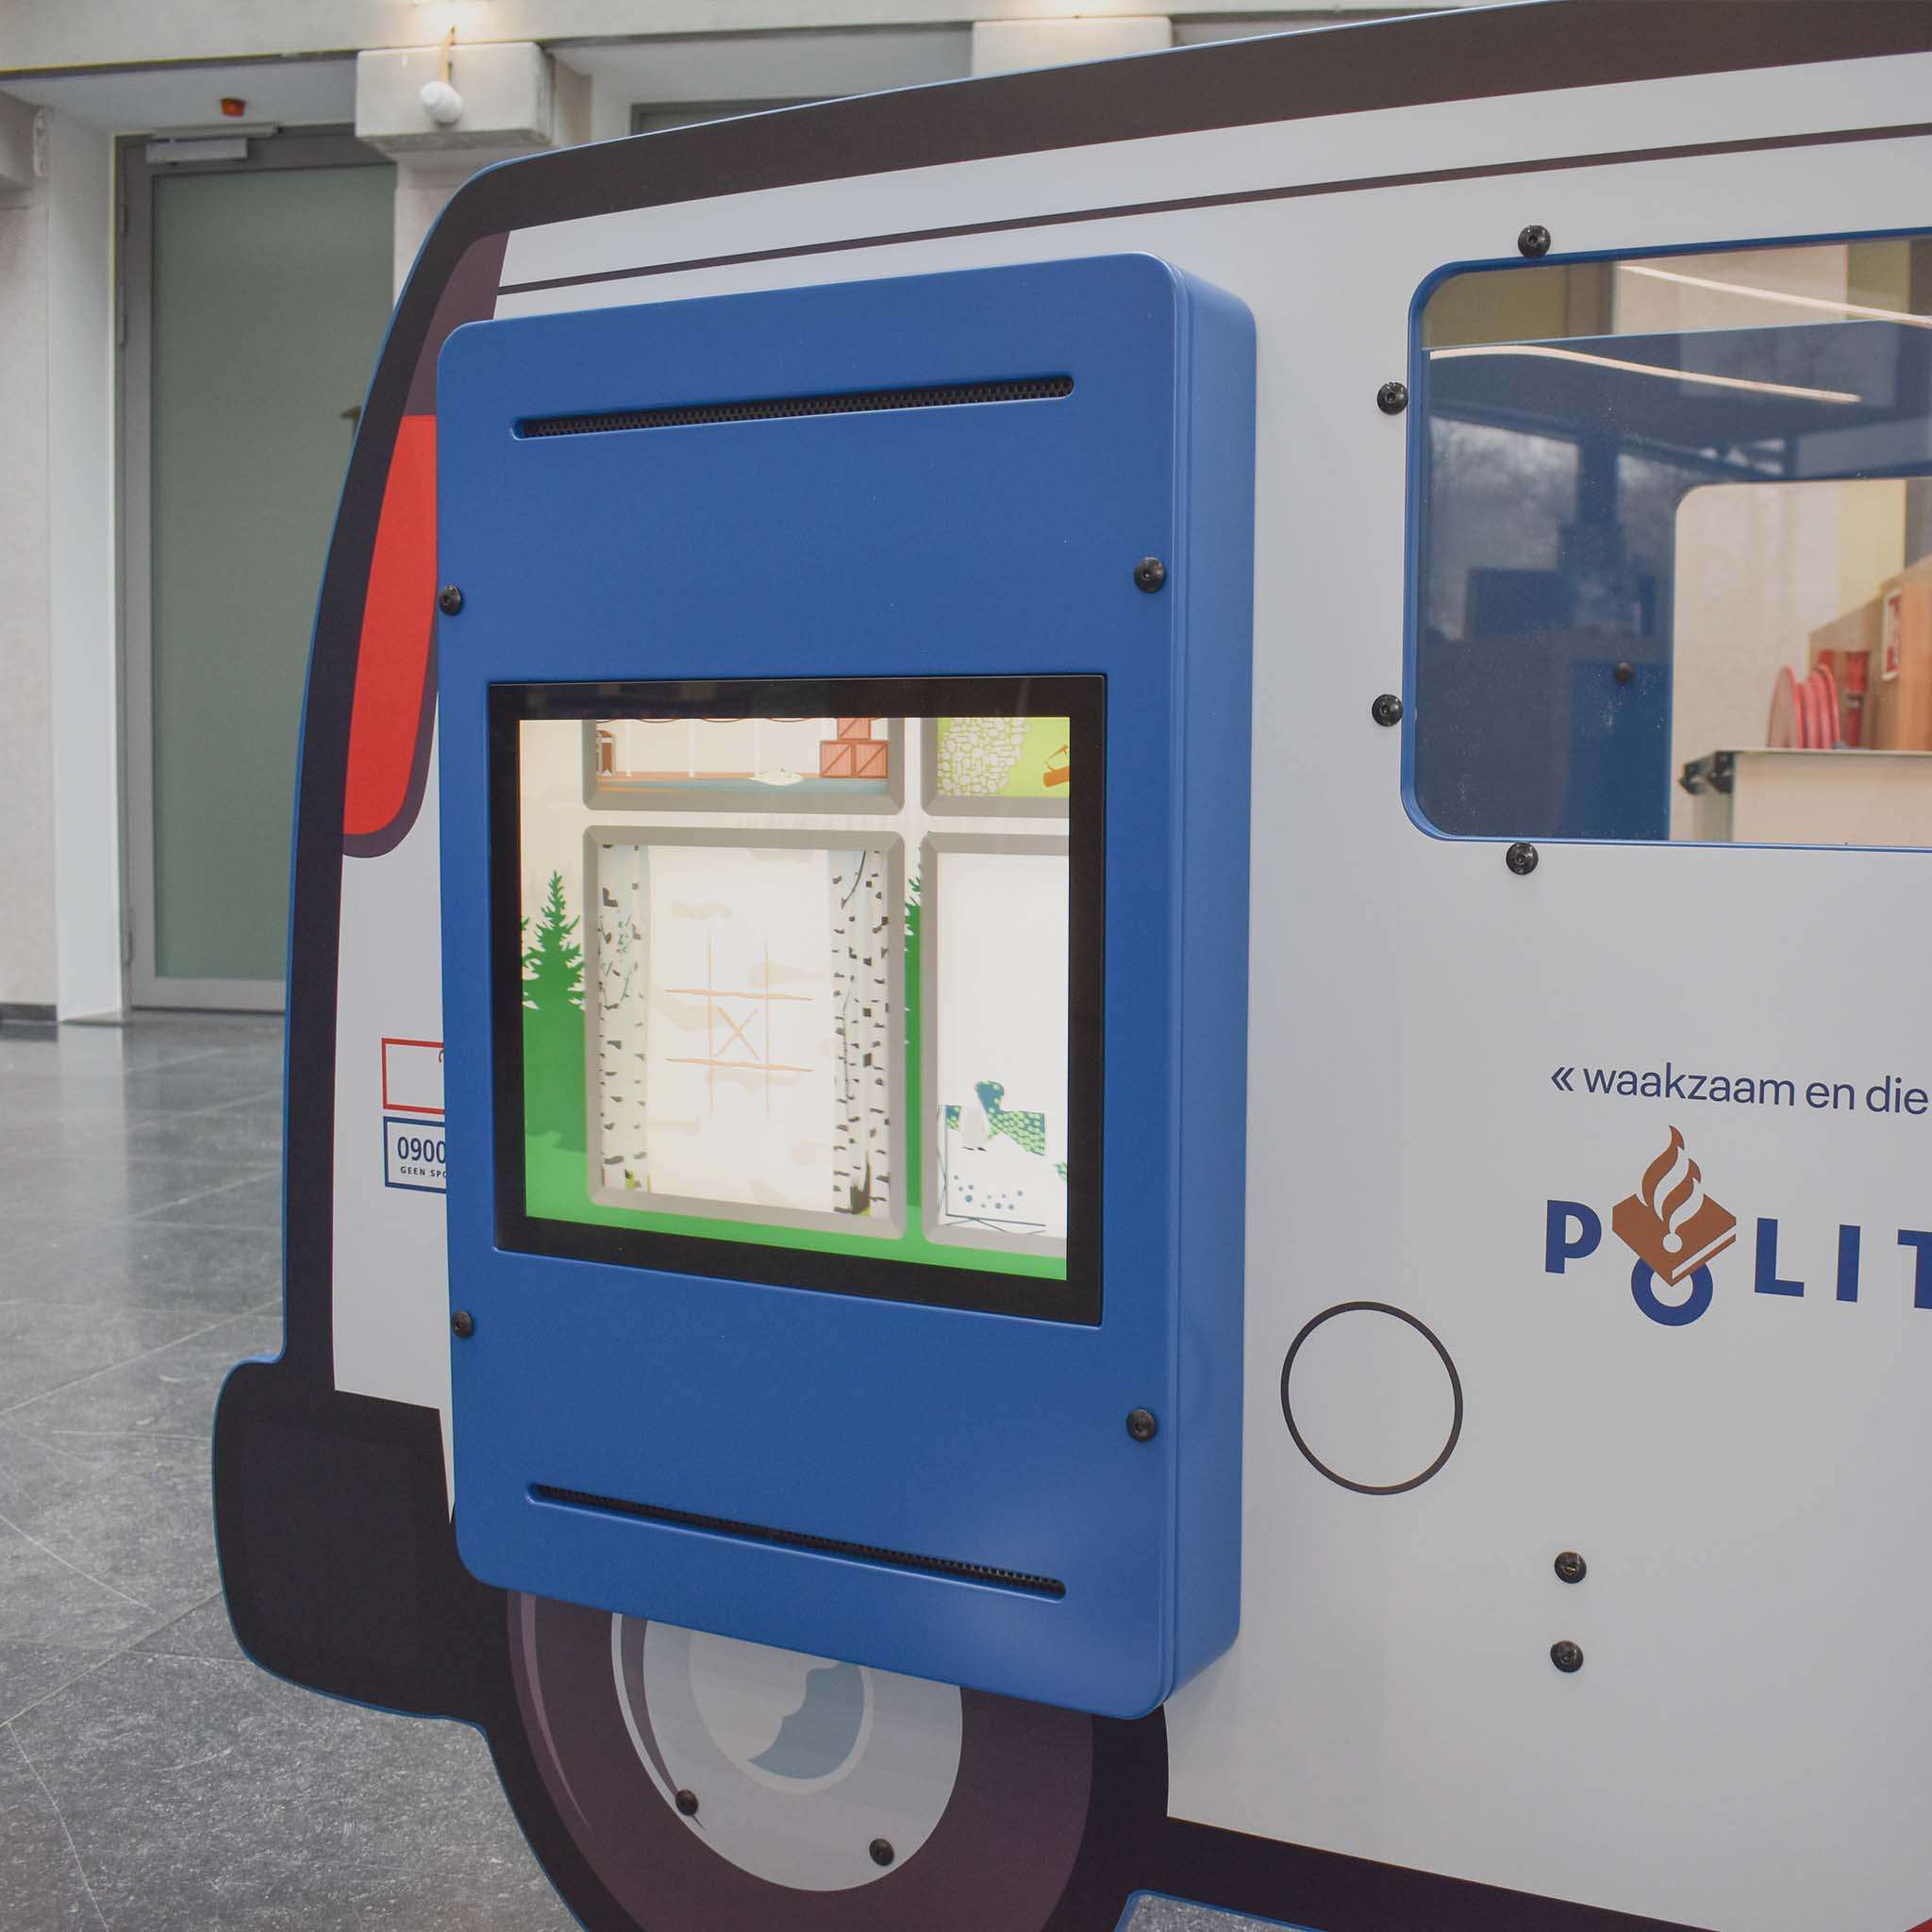 IKC interactief speelsysteem op politieauto speelbus bij politie Maastricht